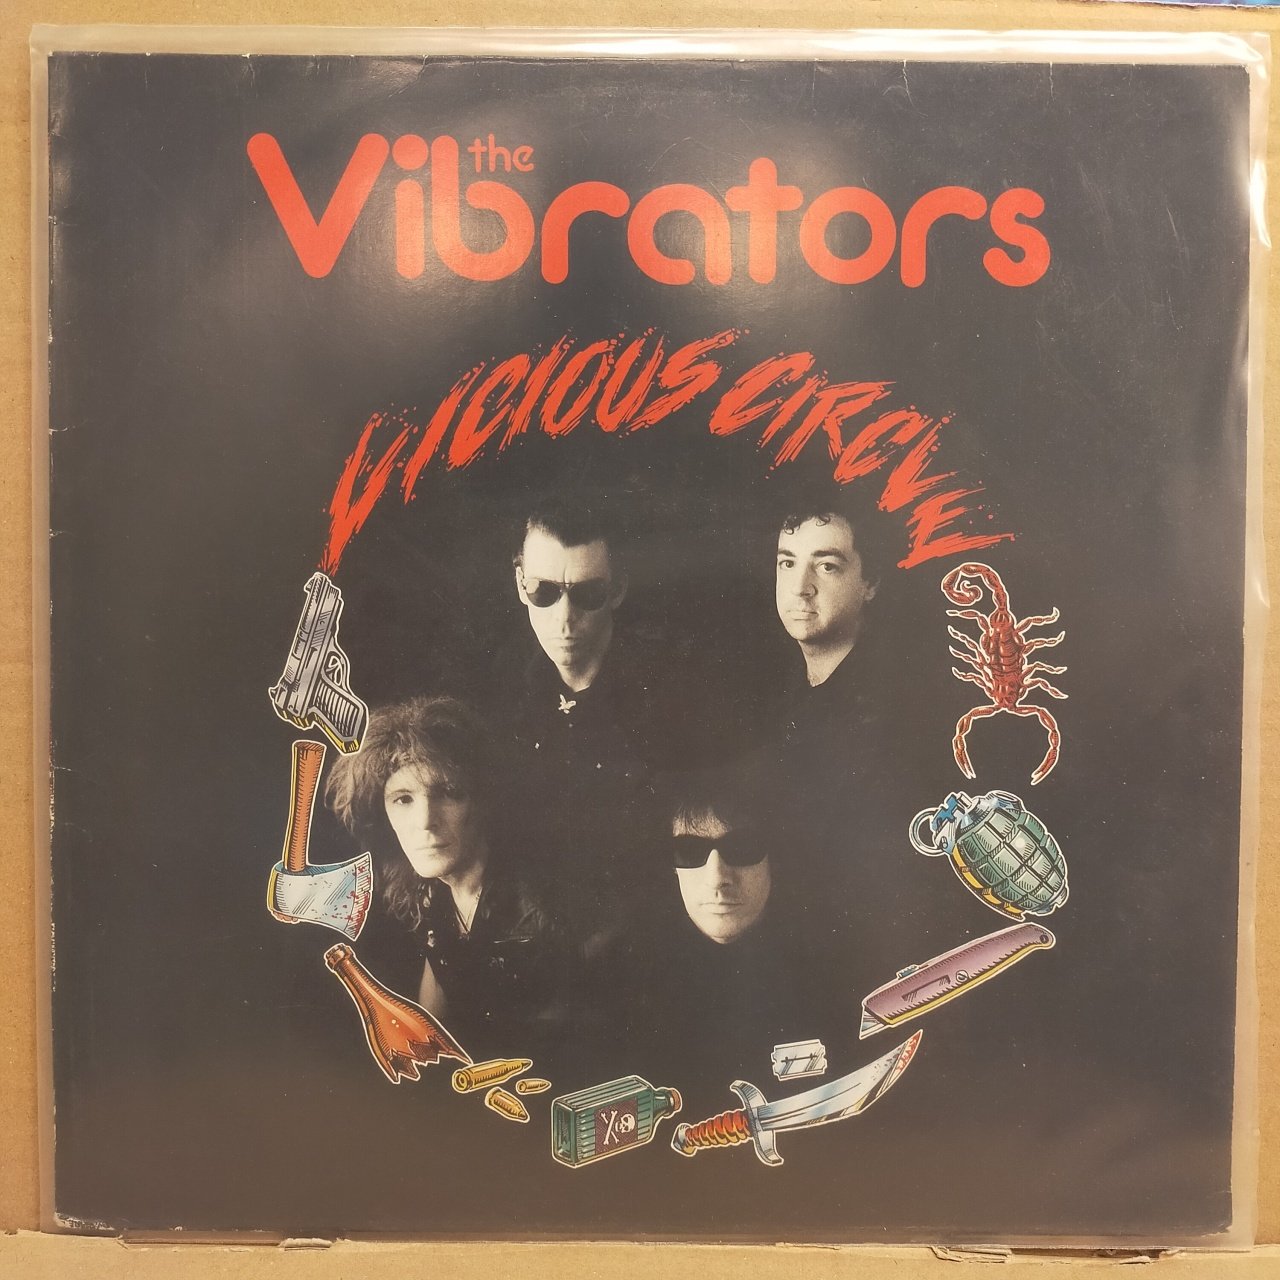 THE VIBRATORS – VICIOUS CIRCLE (1989) - LP 2.EL PLAK